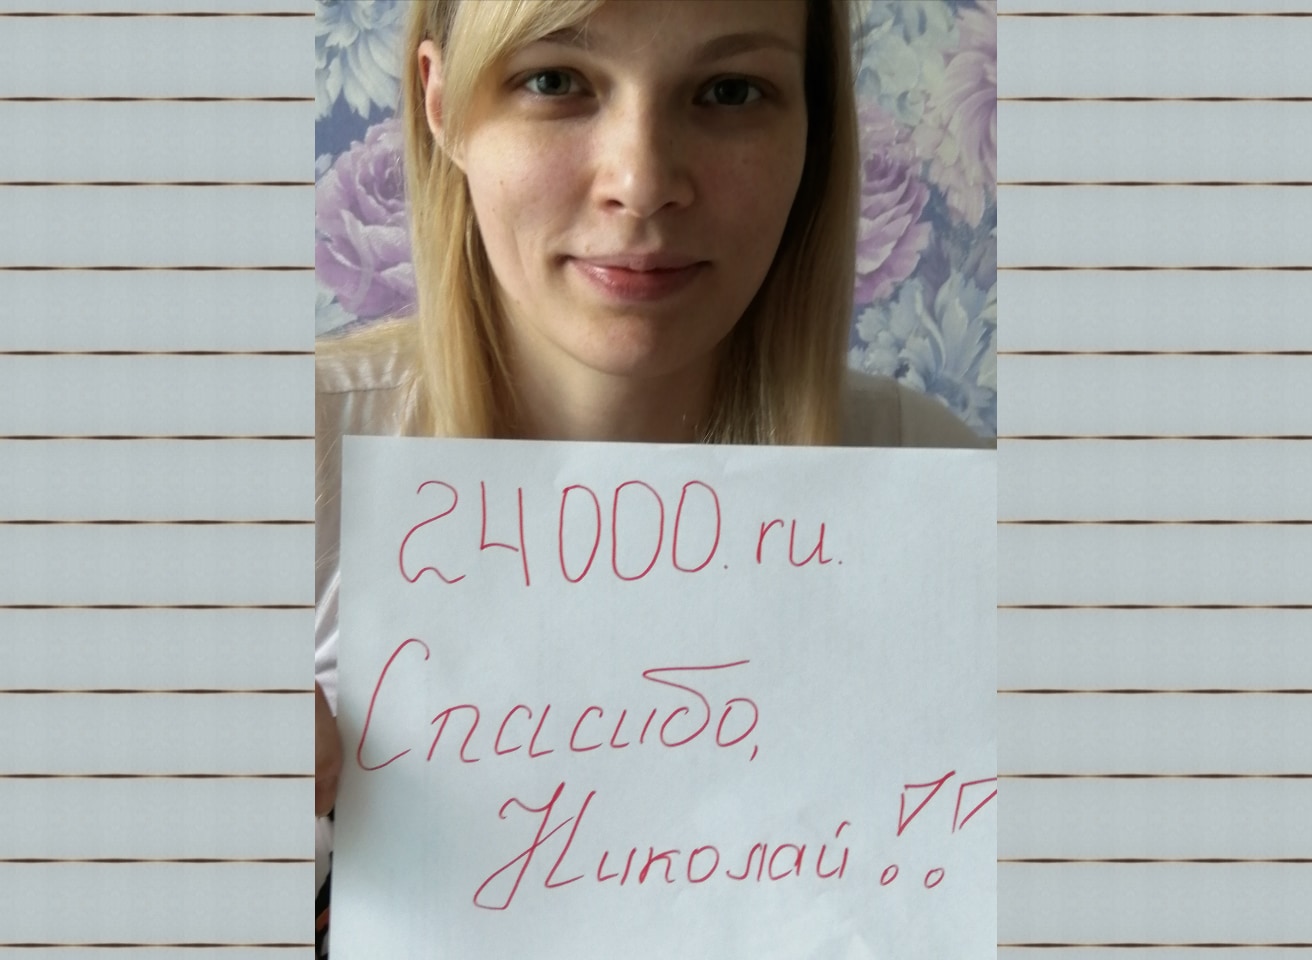 Оказали денежную помощь помощь богатых 24000.ru отзывы